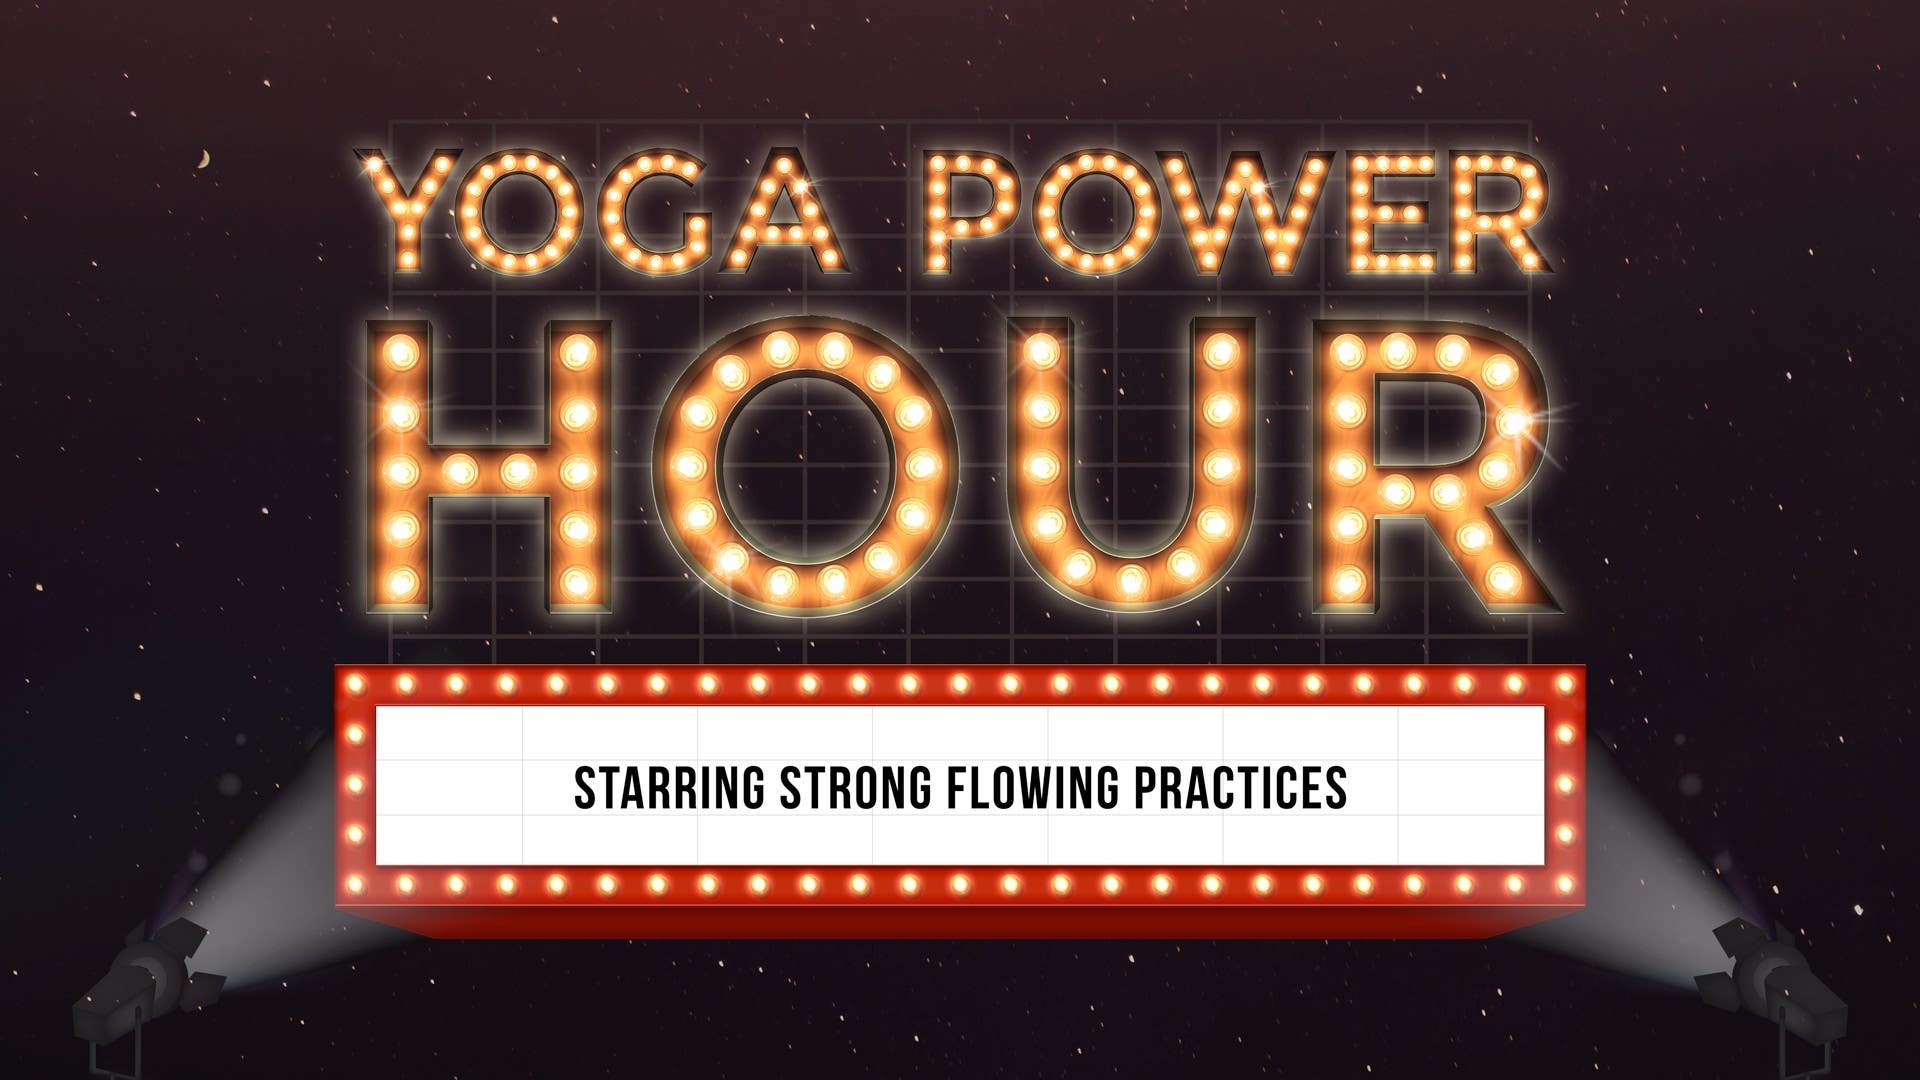 Yoga Power Hour Artwork